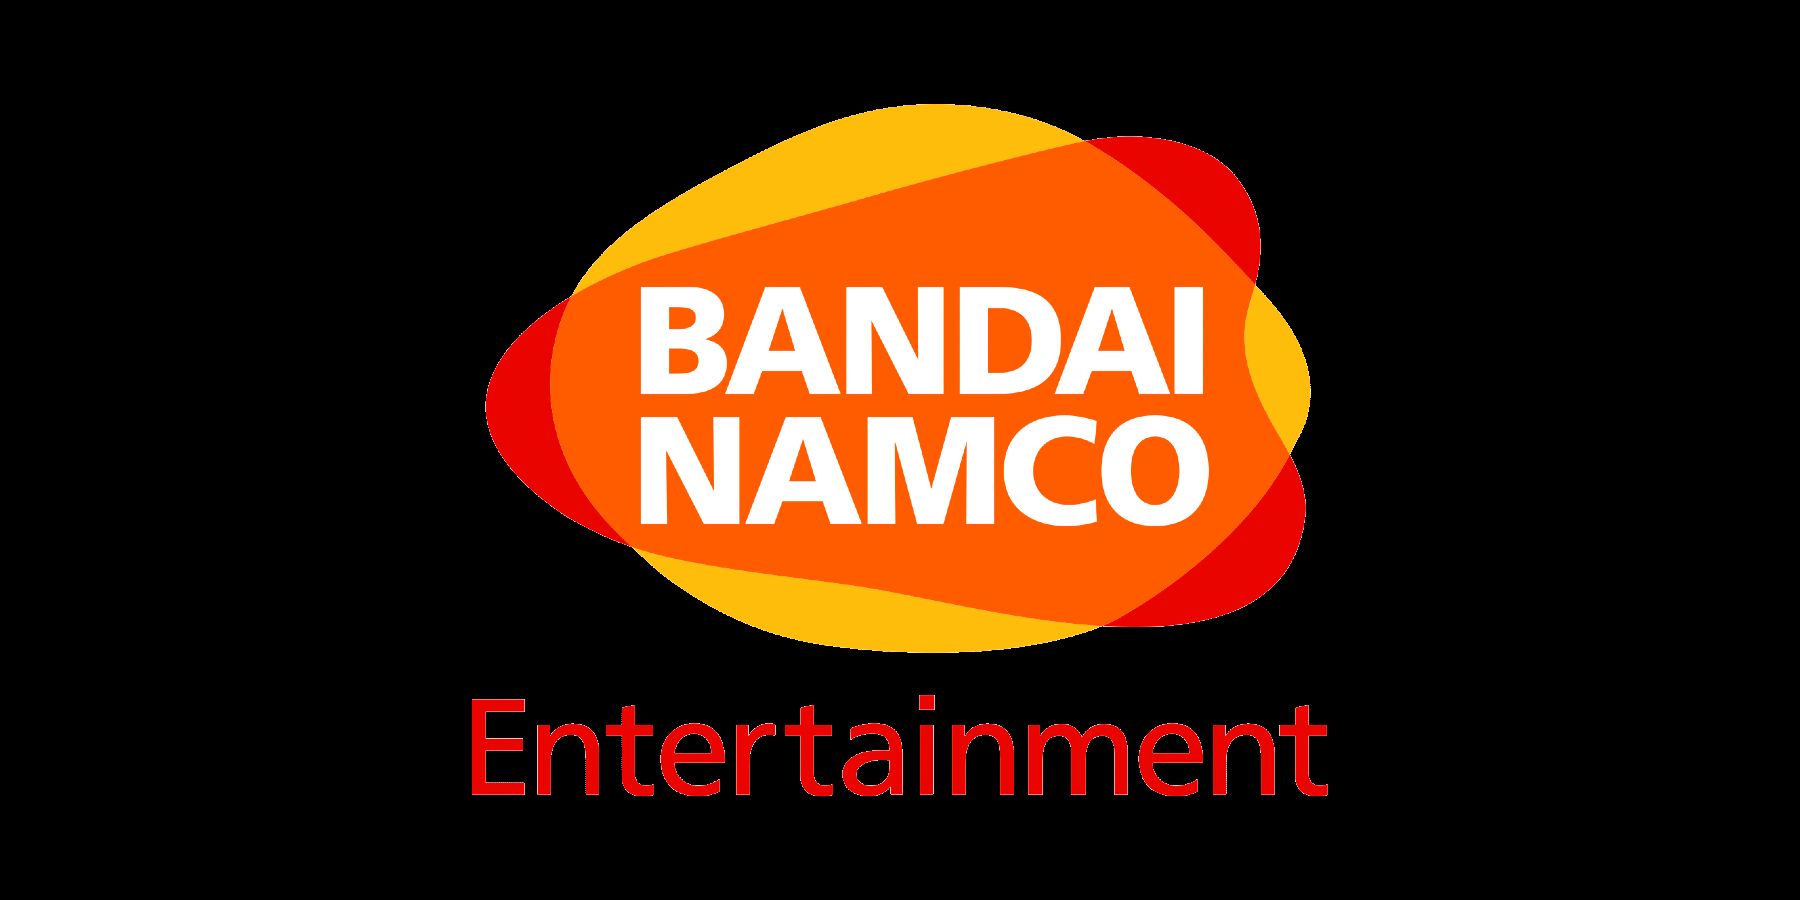 Bandai Namco’nun Yeni Logosu Var